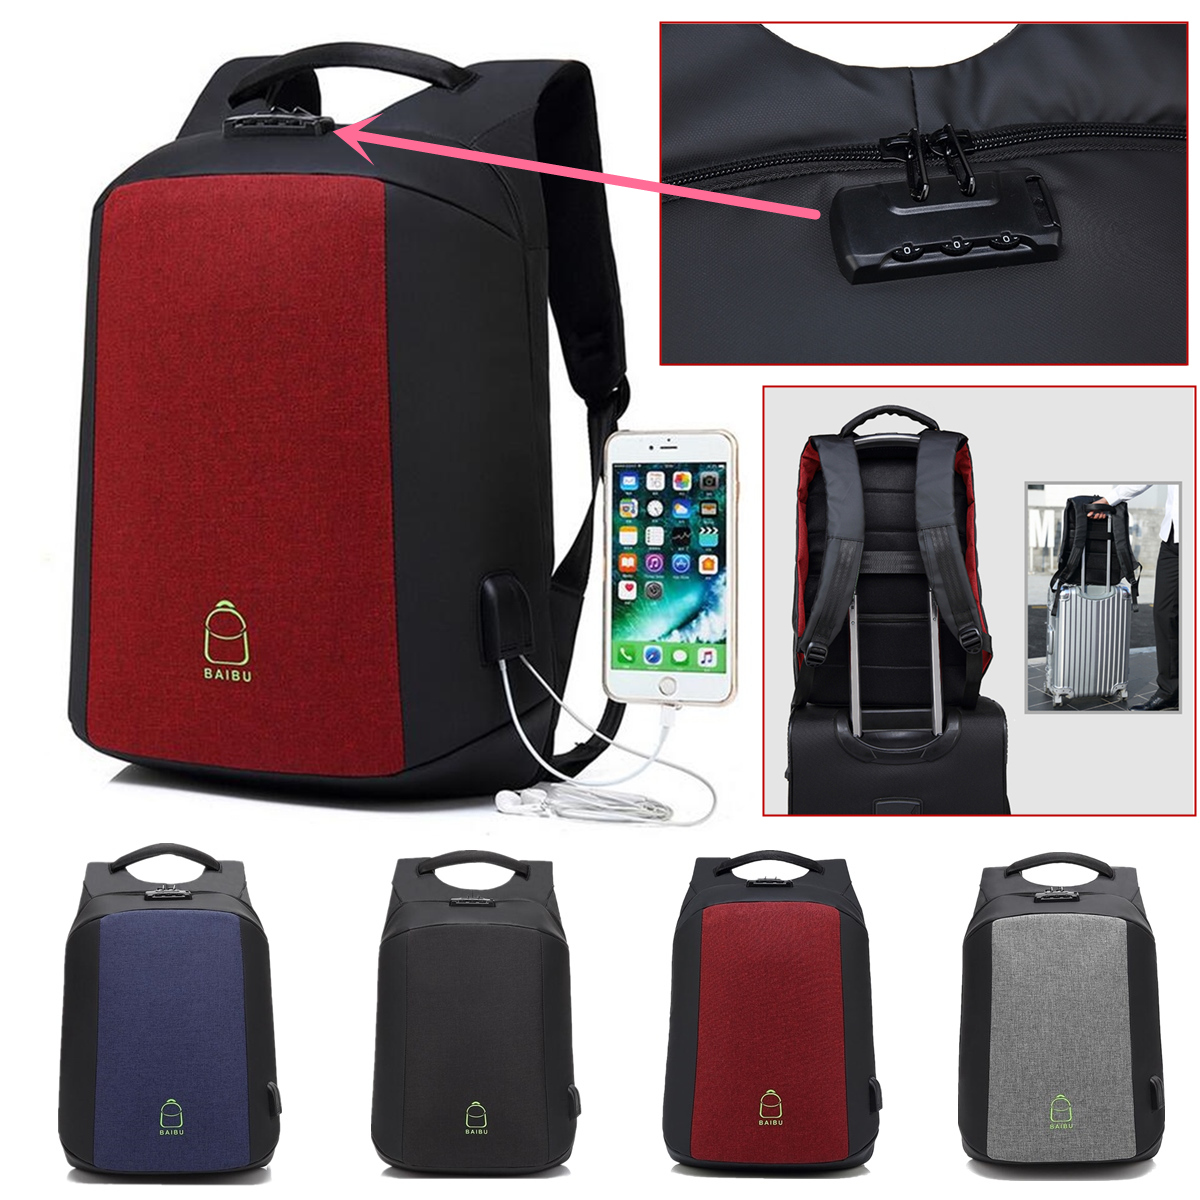 156-Inch-Laptop-Backpack-Bag-Travel-Bag-Student-Bag-With-External-USB-Charging-Port-1288885